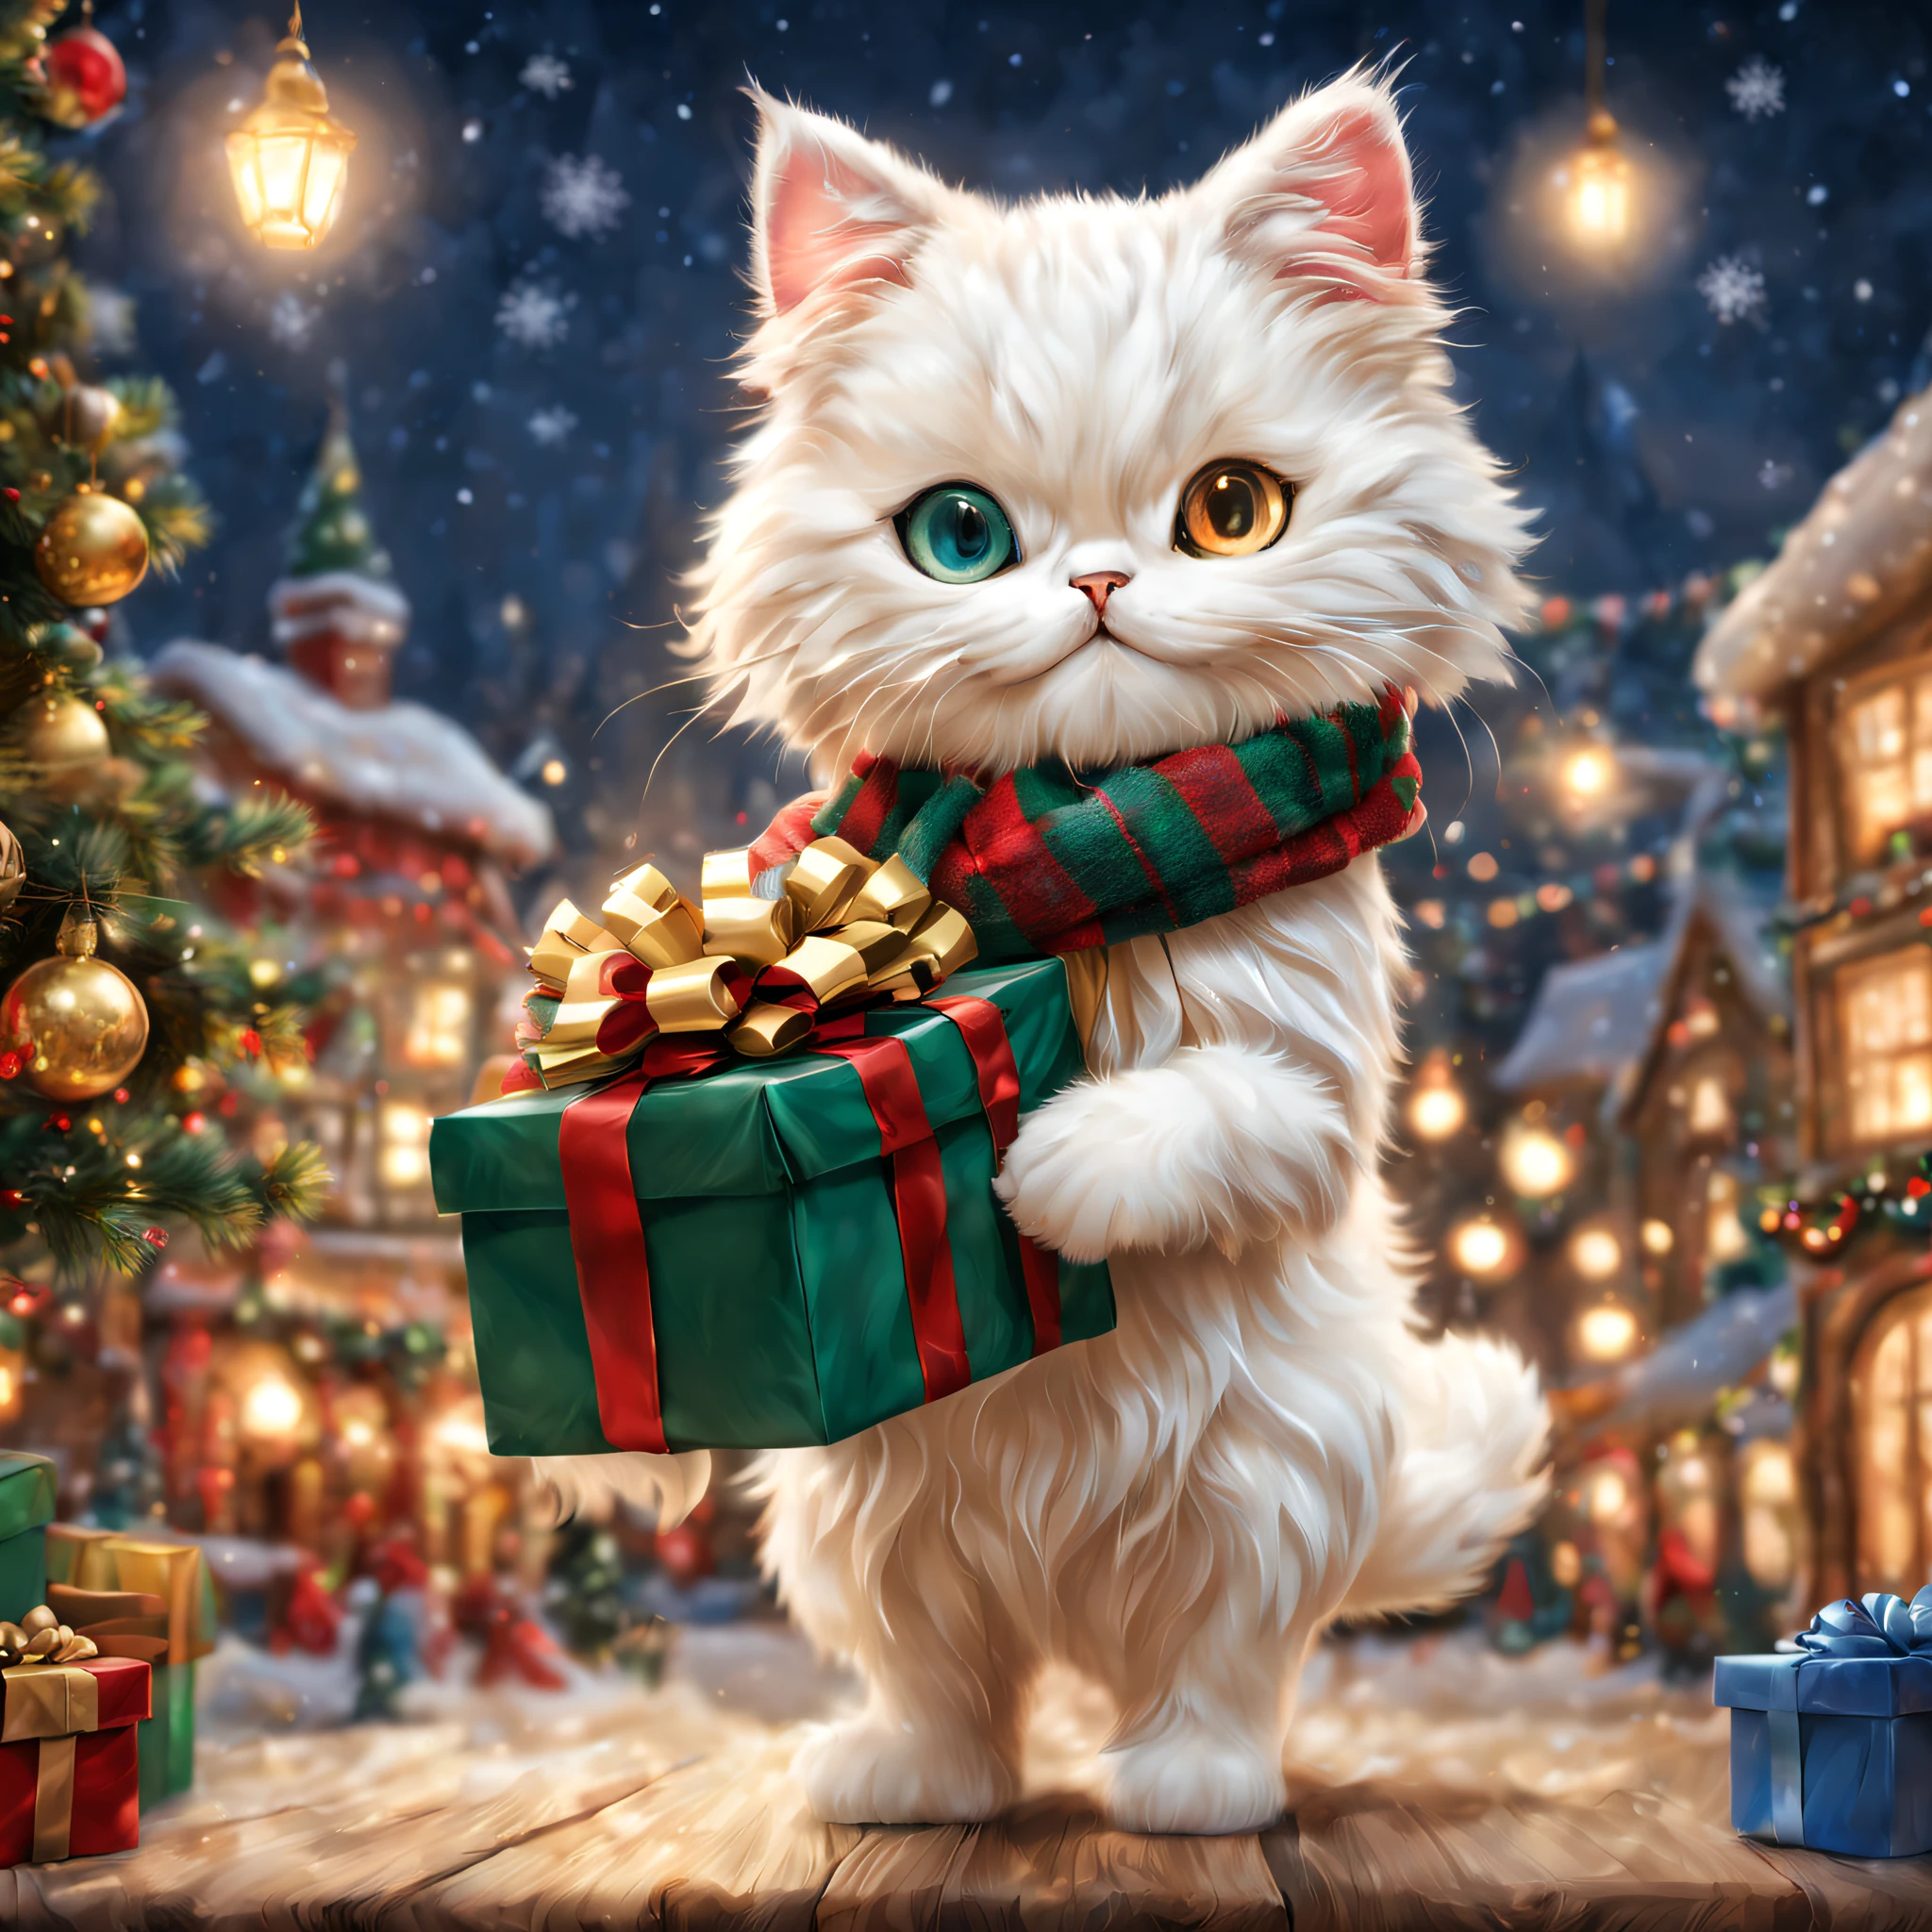 (Menuett mit Schal),eine geschenkbox in der hand halten,Weihnachtsstadt,tanzen,Springen,niedliche kleine,Meisterwerk,Top Qualität,flauschige Katze,Weihnachtsstadt,Beleuchtungen,Weihnachtsbaum,Weihnachtsmütze,niedliche kleine,F,Ein herrliches,tre anatomisch korrekt,,photoRealstic,Katzen,Menuett,seltsames Auge